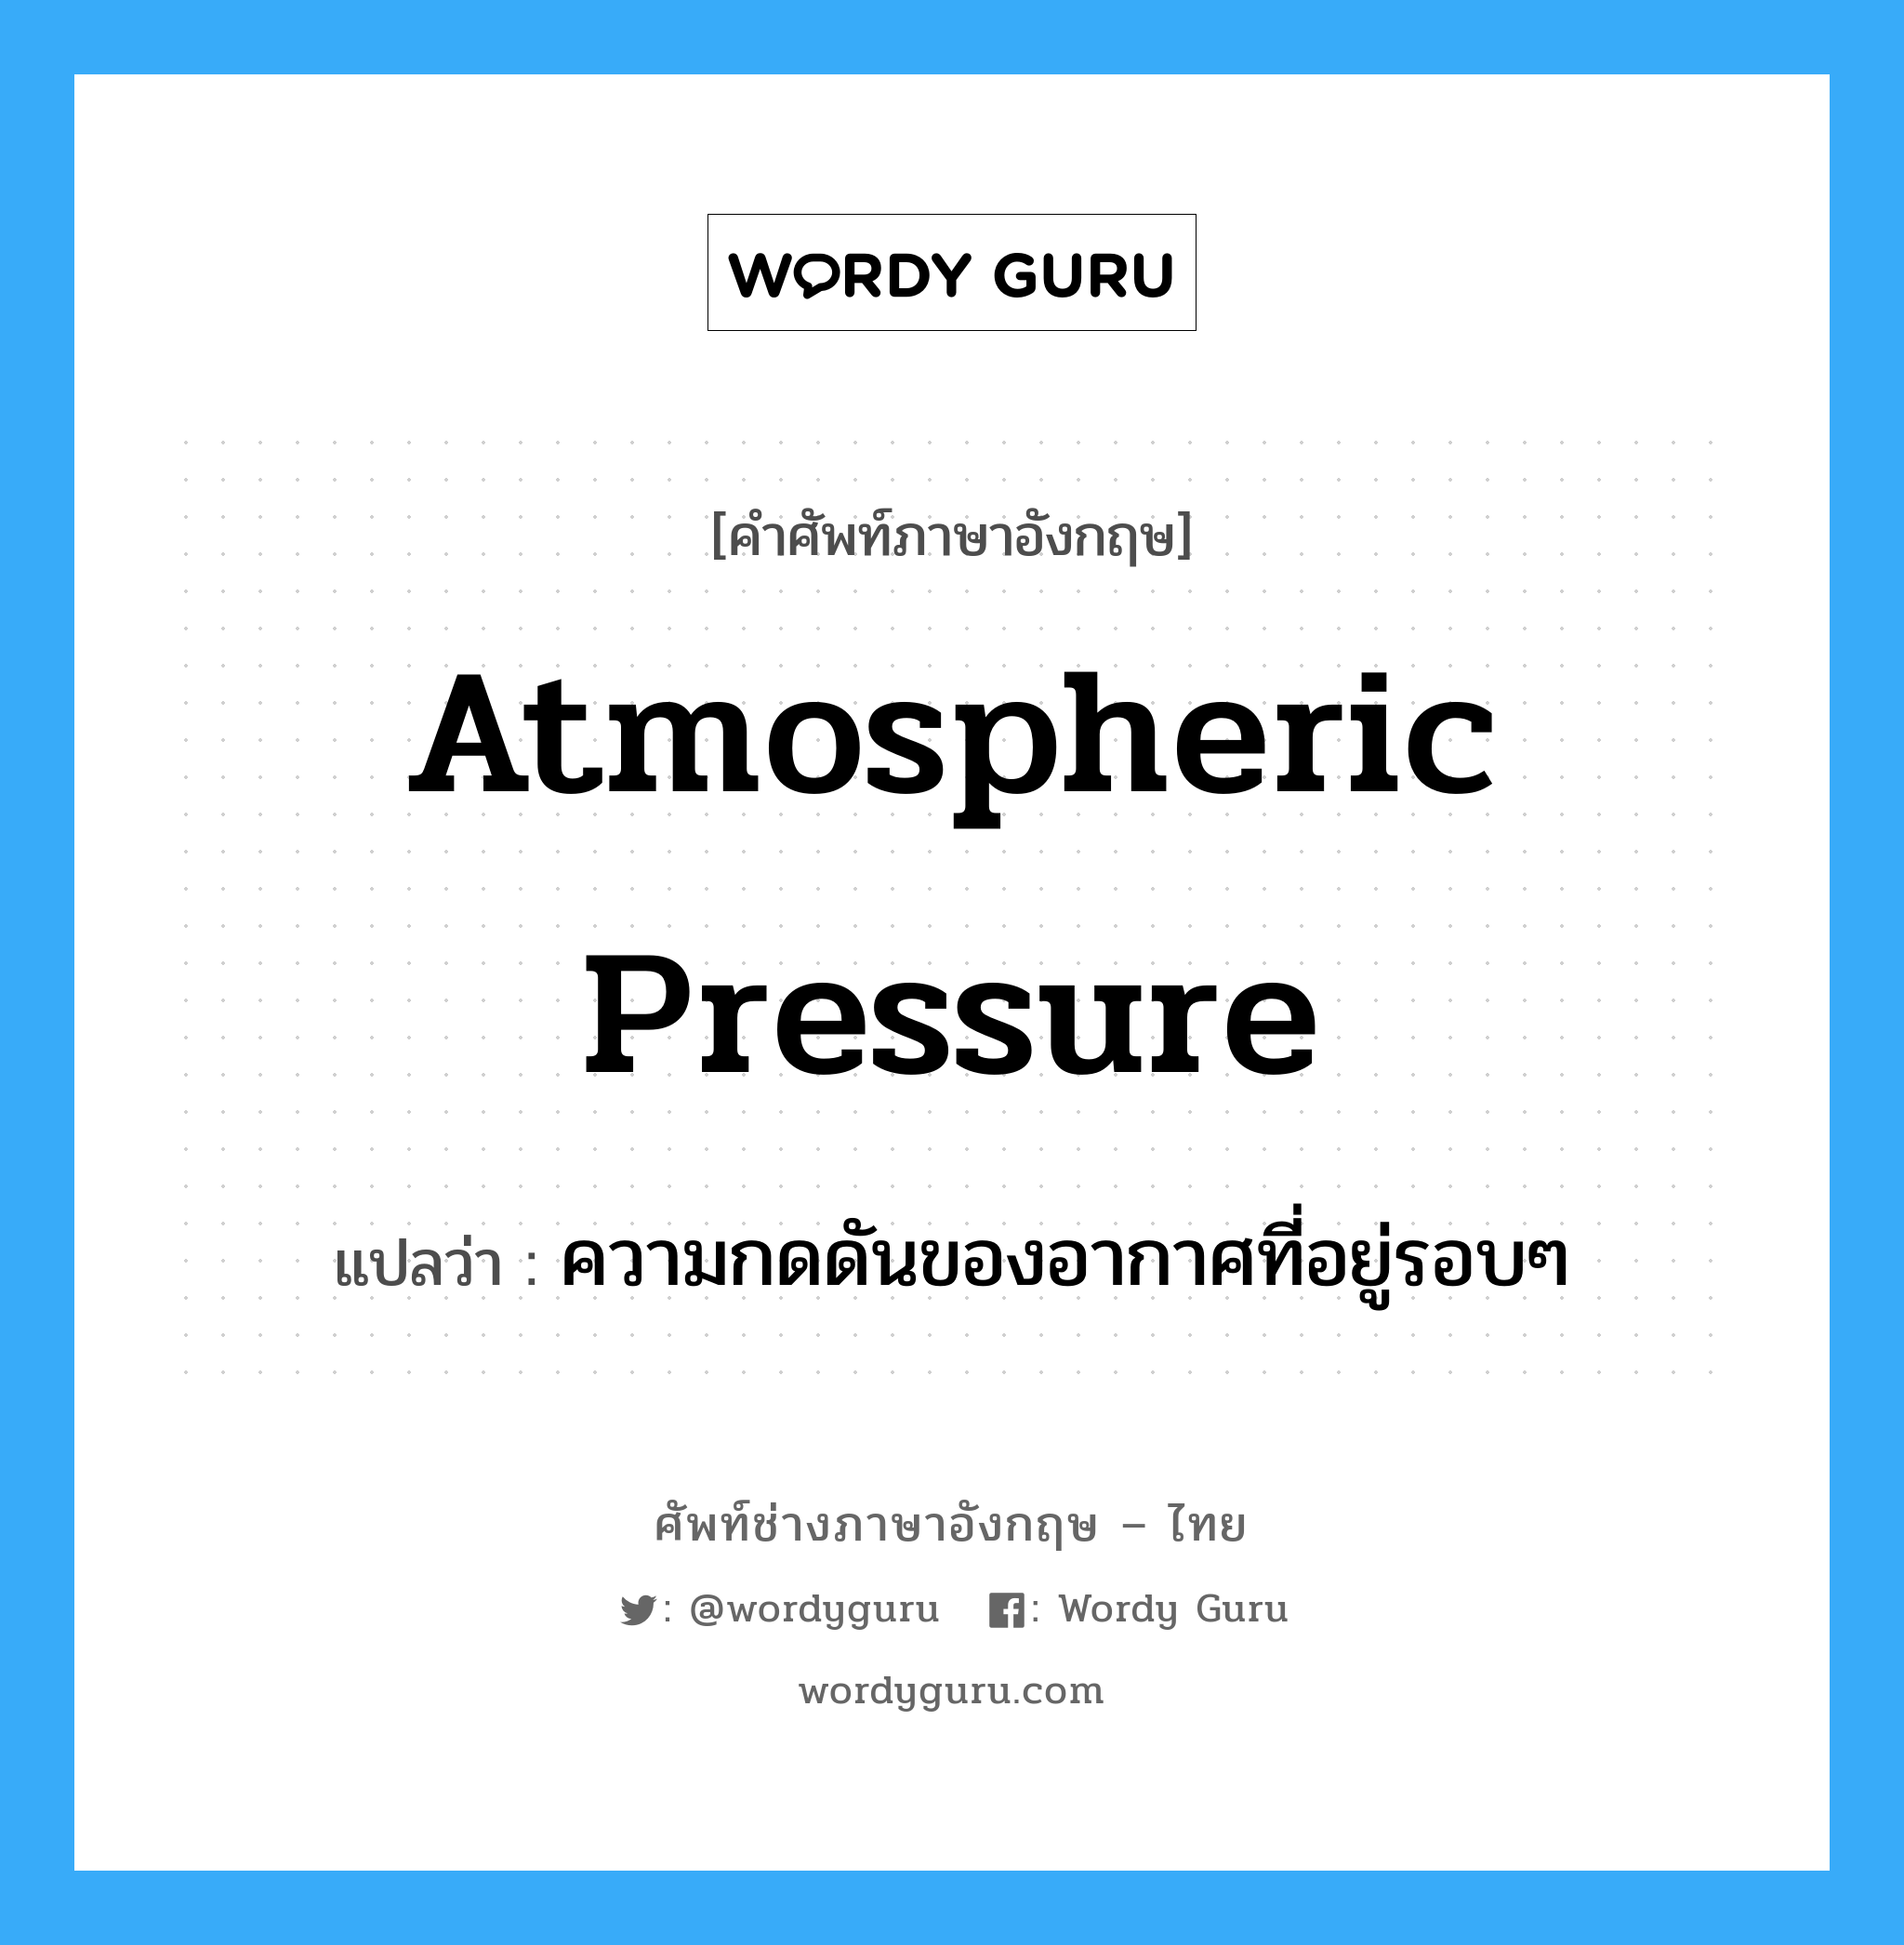 ความกดดันของอากาศที่อยู่รอบๆ ภาษาอังกฤษ?, คำศัพท์ช่างภาษาอังกฤษ - ไทย ความกดดันของอากาศที่อยู่รอบๆ คำศัพท์ภาษาอังกฤษ ความกดดันของอากาศที่อยู่รอบๆ แปลว่า atmospheric pressure